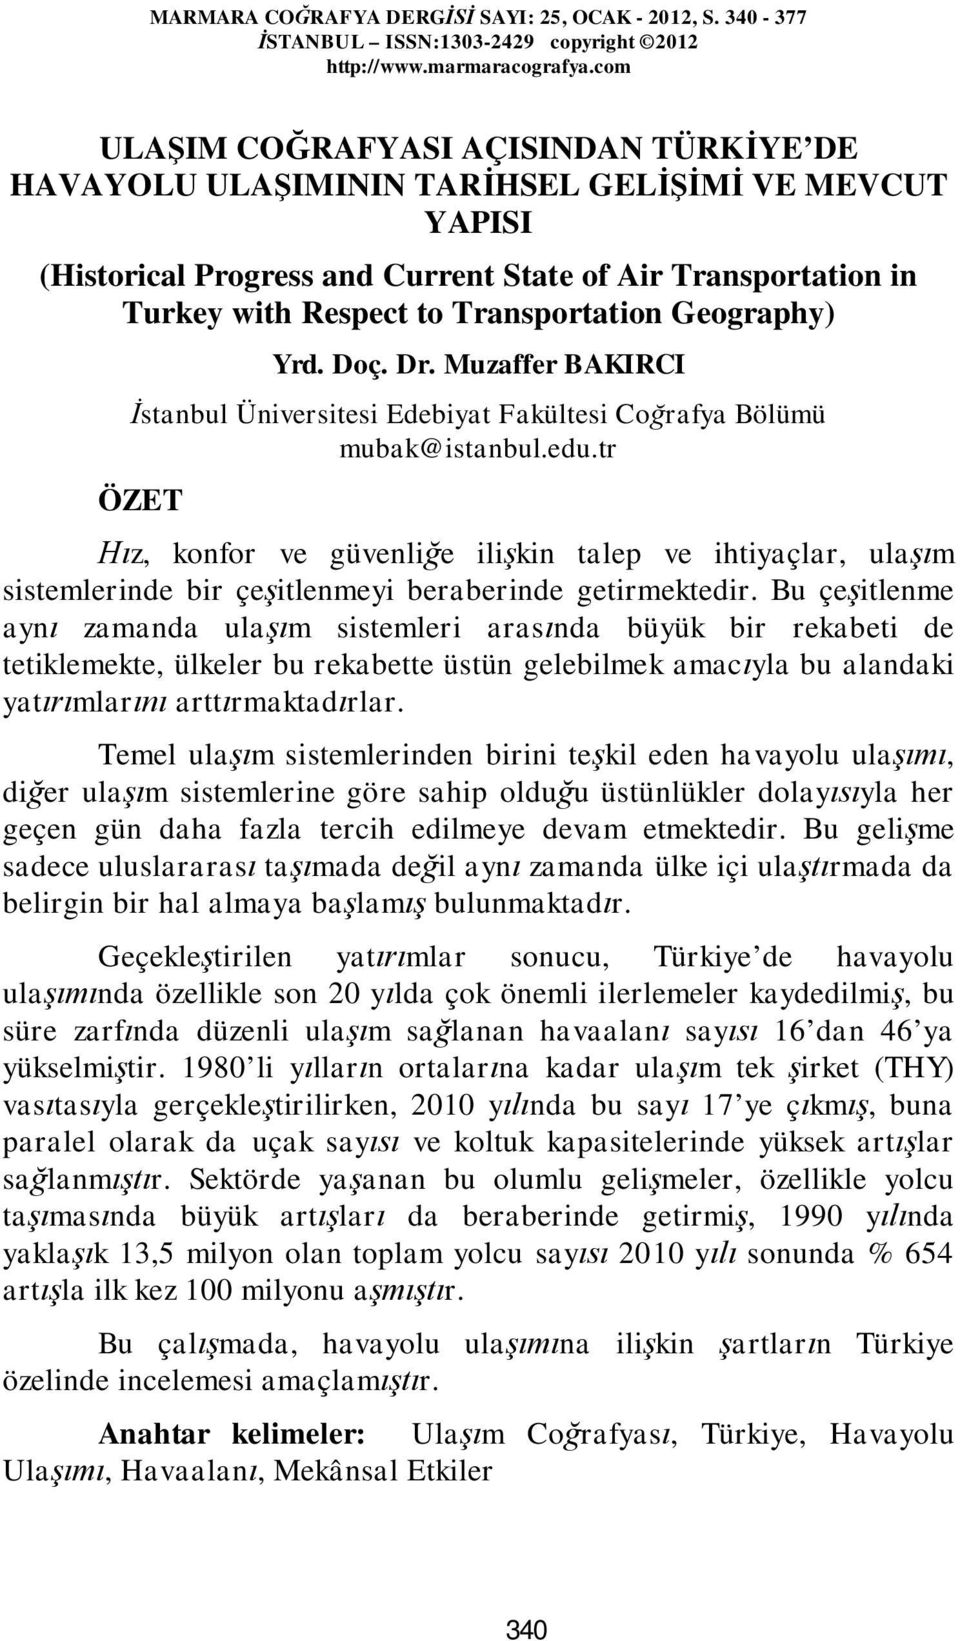 Geography) Yrd. Doç. Dr. Muzaffer BAKIRCI İstanbul Üniversitesi Edebiyat Fakültesi Coğrafya Bölümü mubak@istanbul.edu.